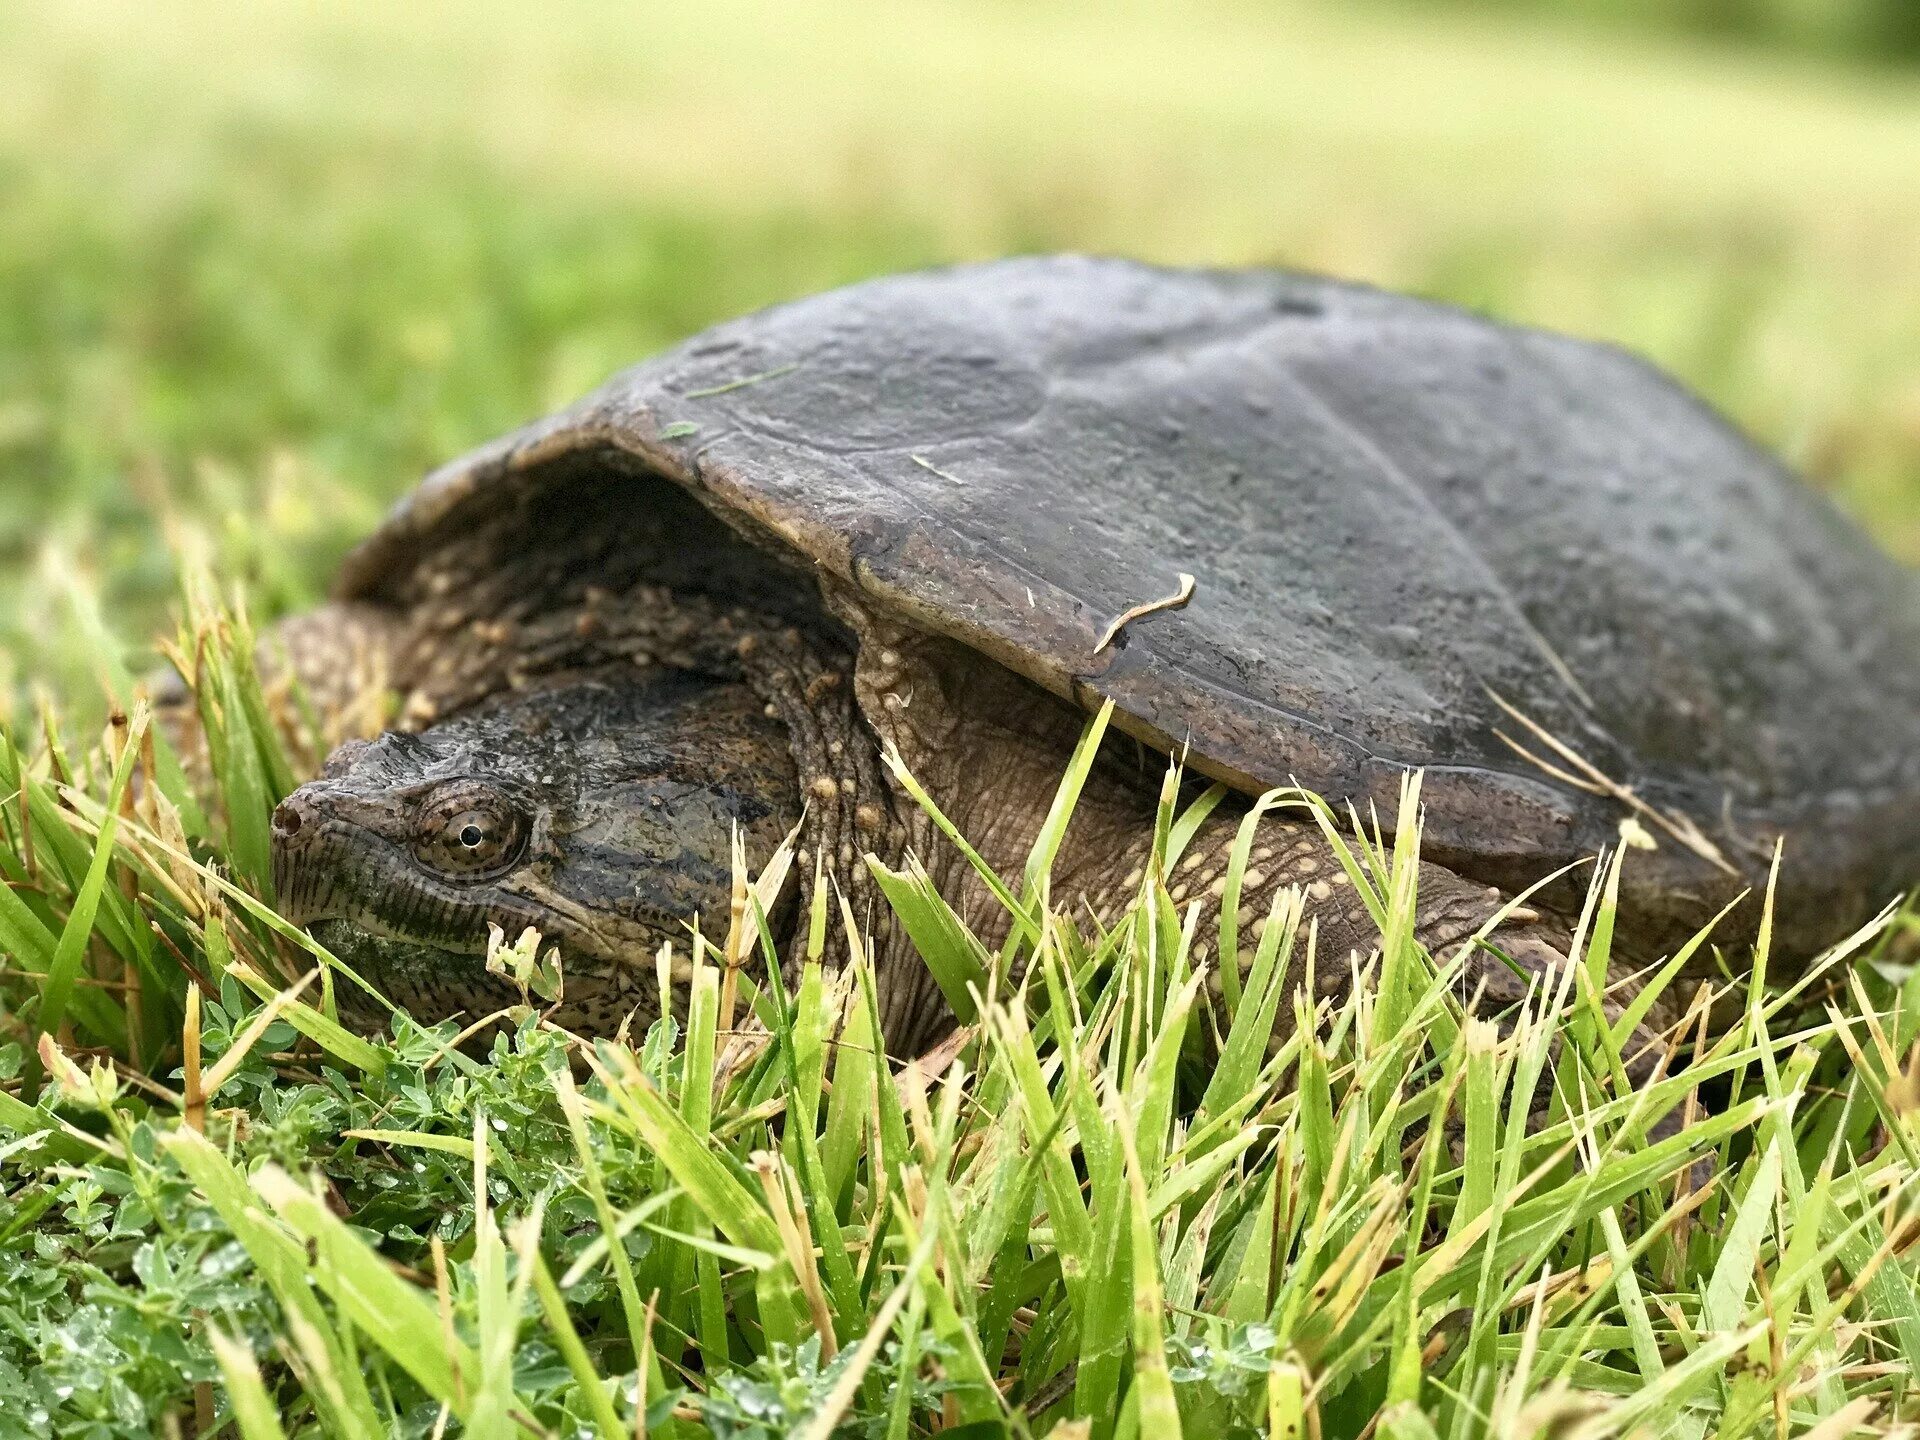 Каймановская черепаха. Грифовая черепаха. Черепаха на траве. Черепашка в траве.